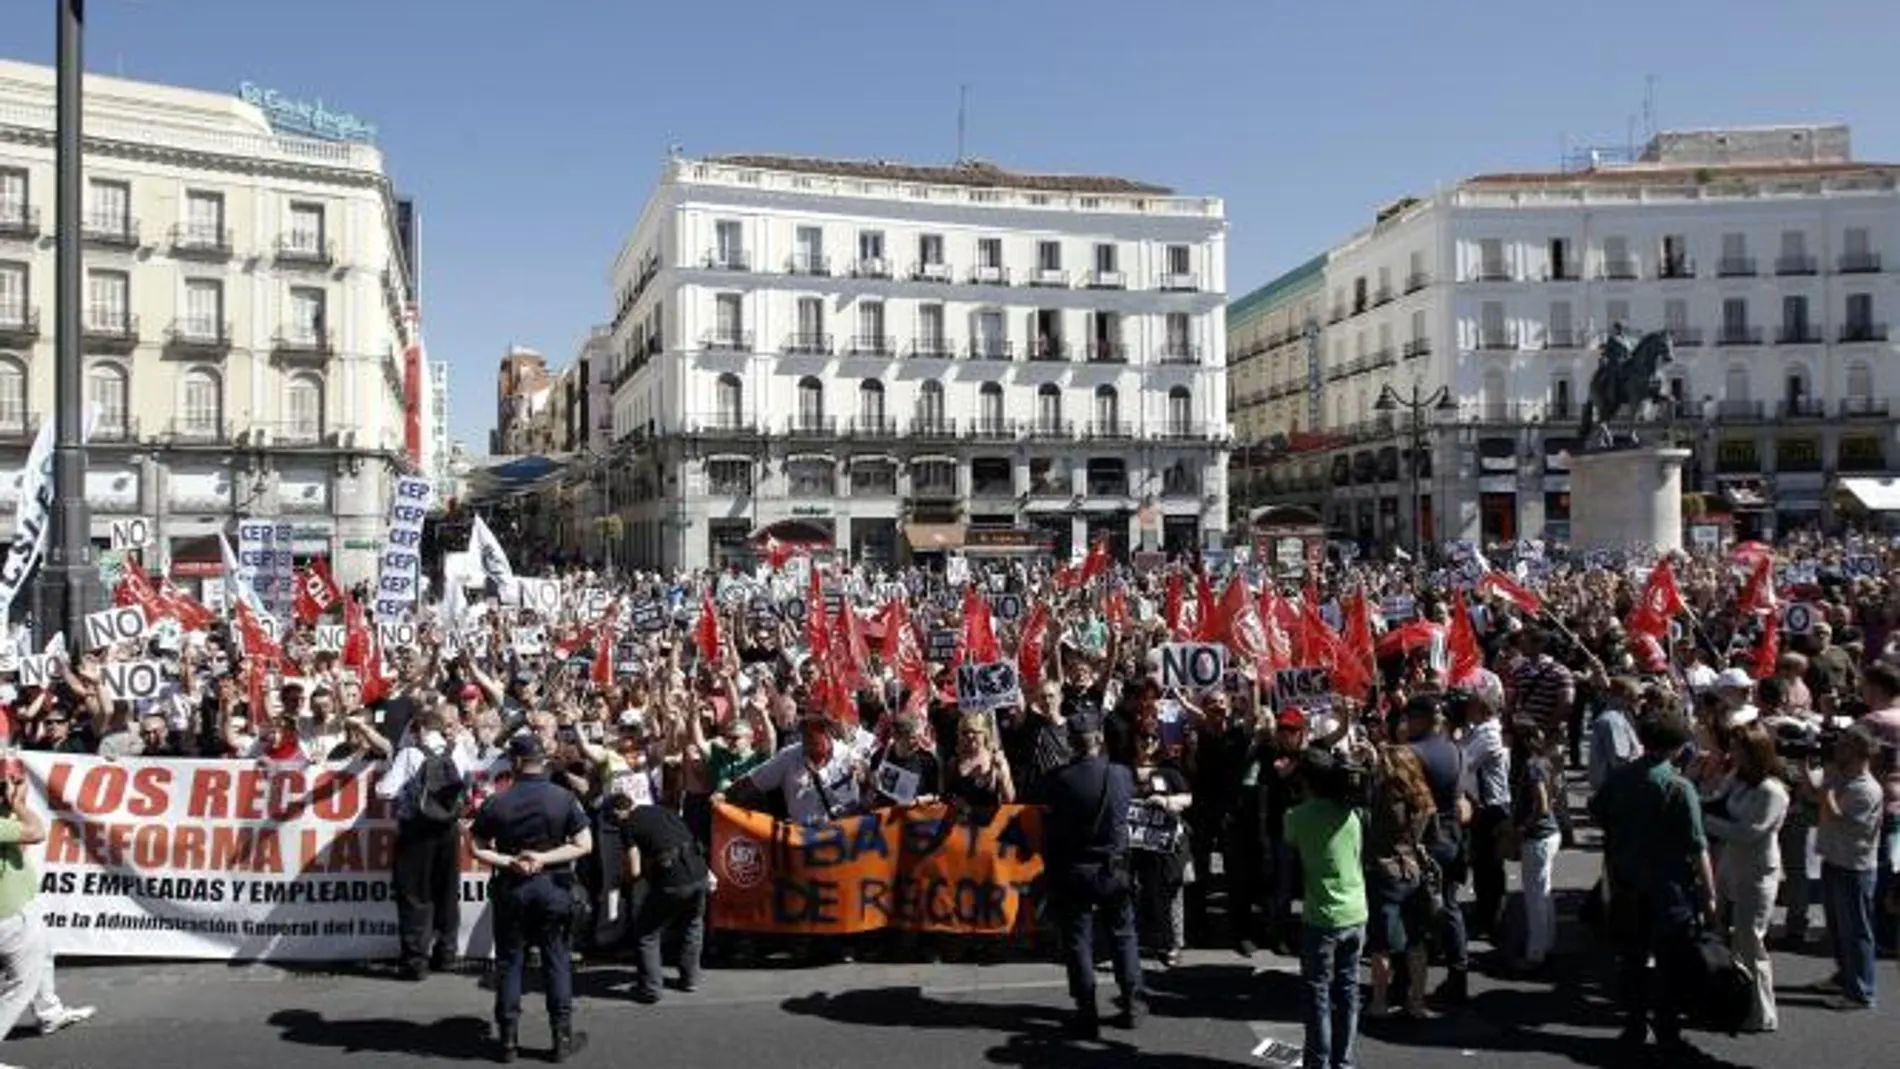 La delegada del Gobierno en Madrid increpada por los manifestantes contra el PP